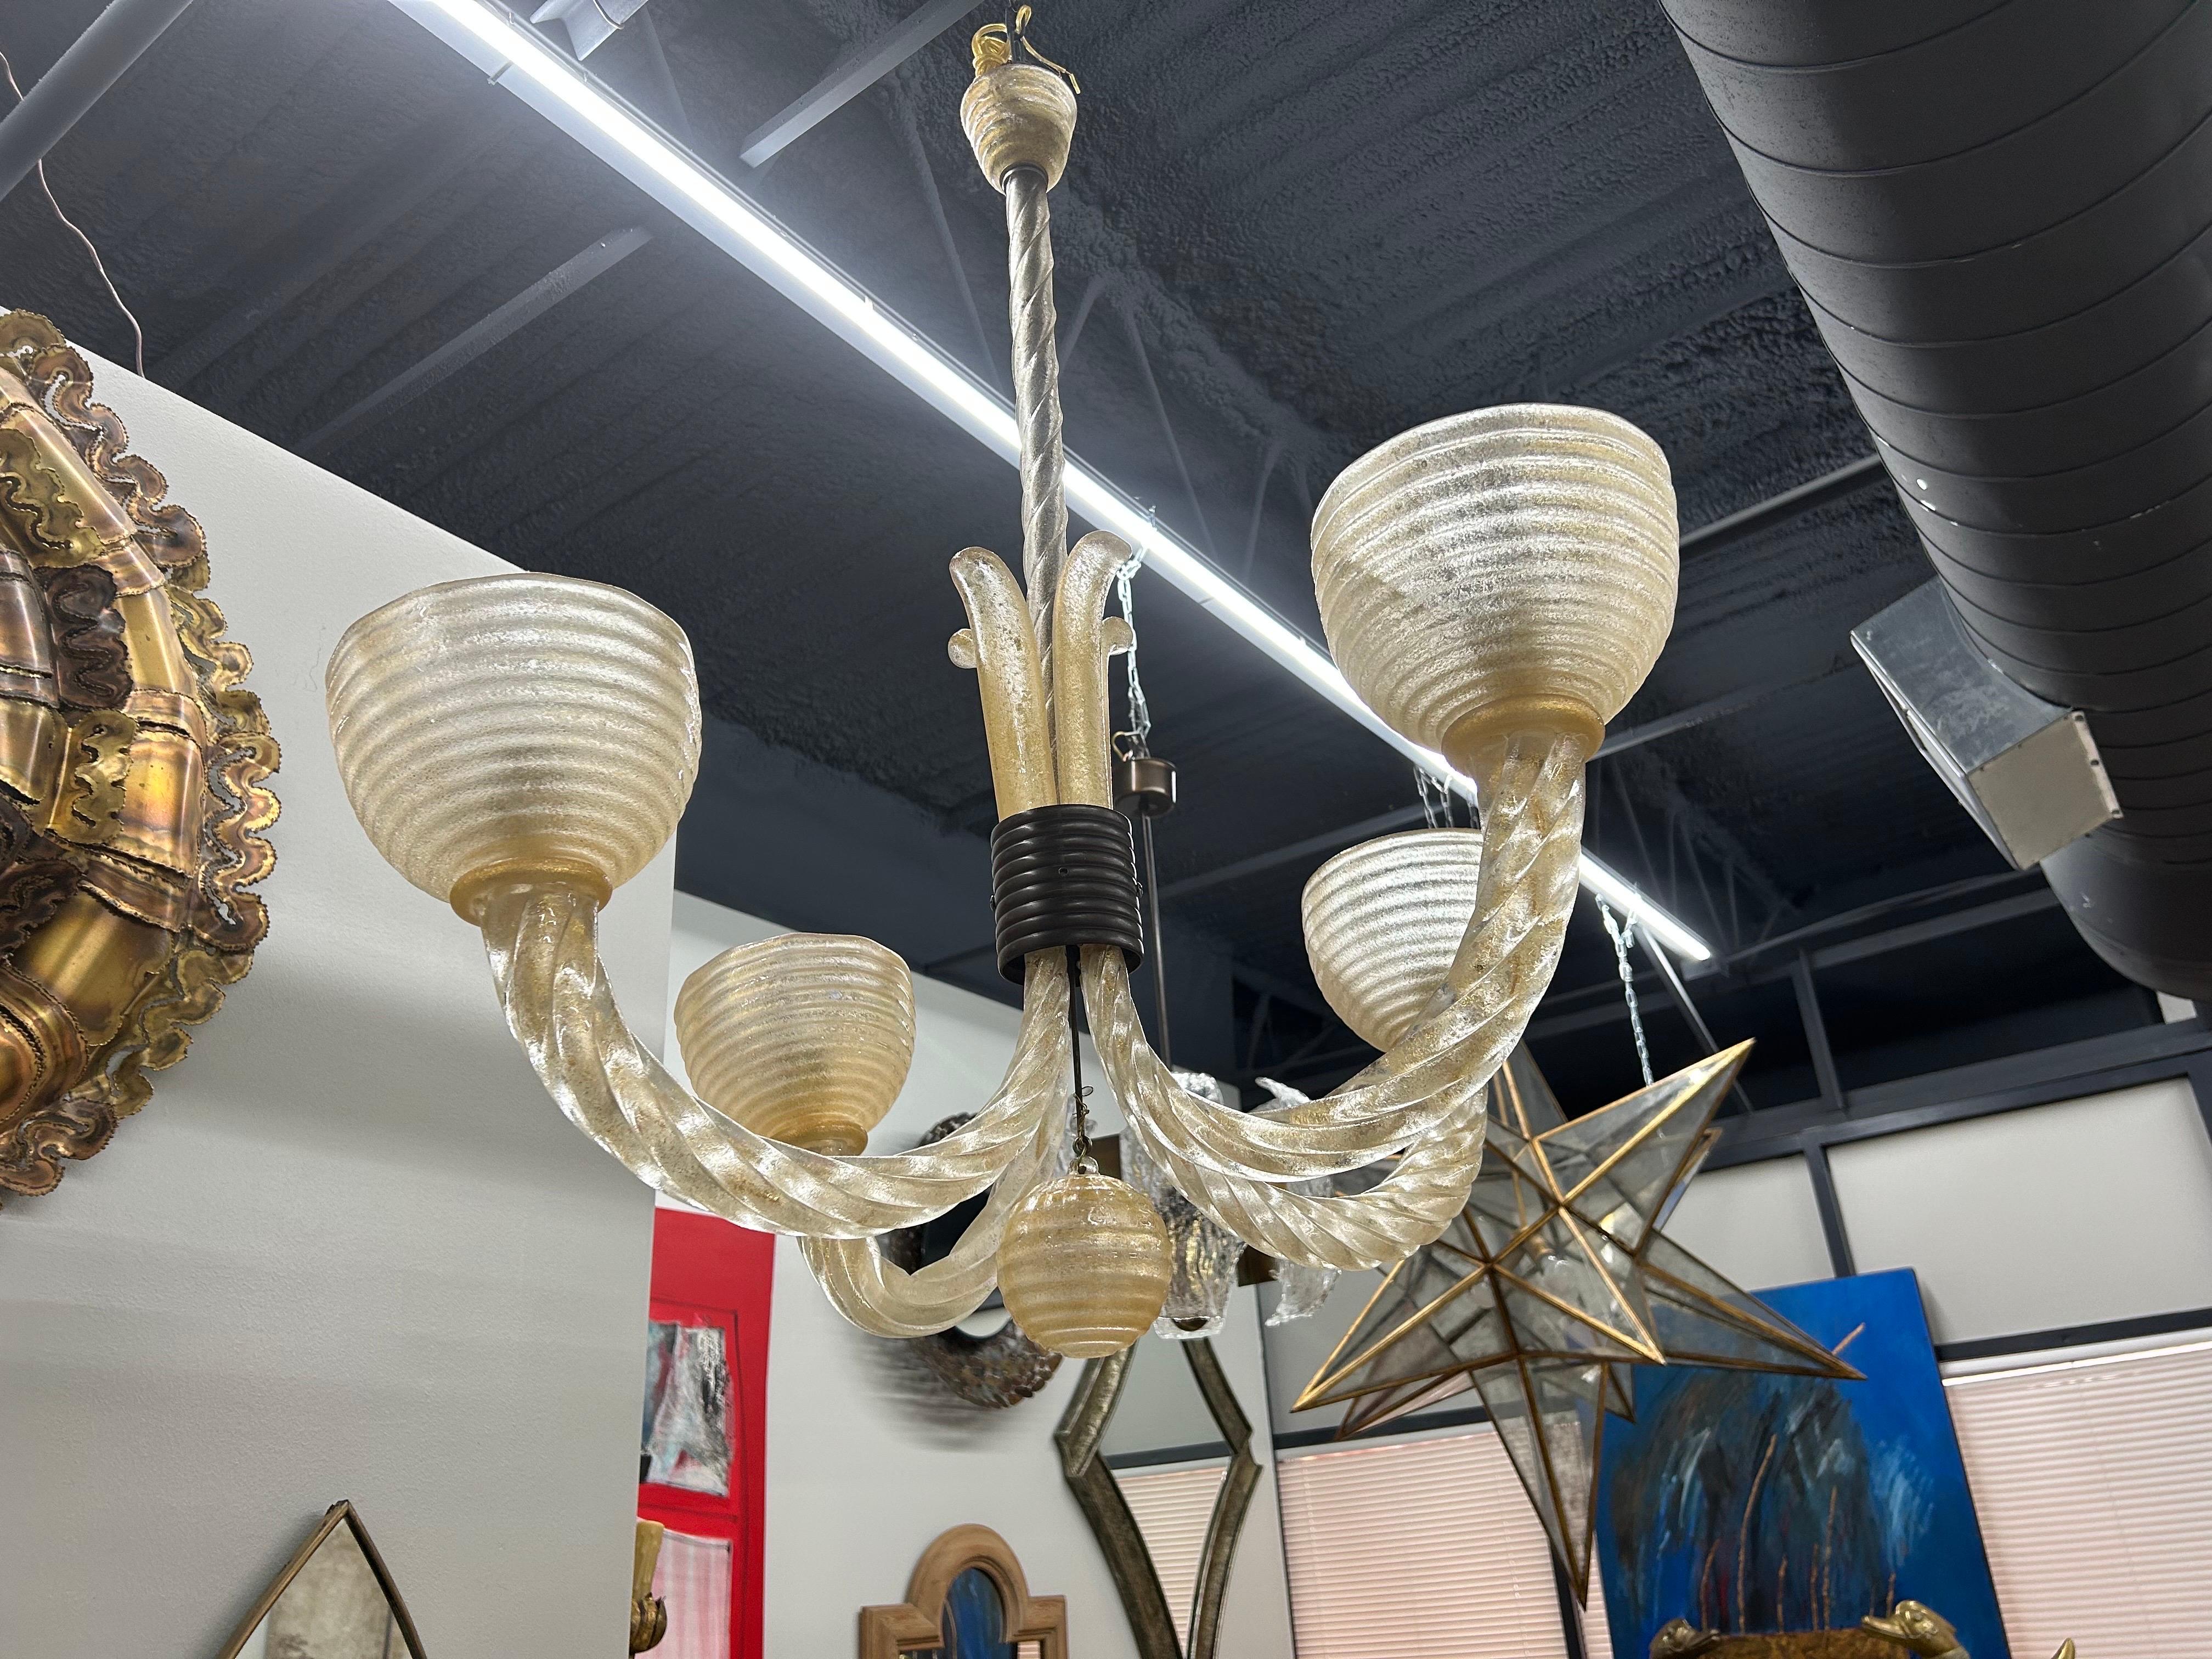 Lámpara de cristal de Murano de Barovier.
Te ofrecemos una preciosa lámpara de cristal de Murano de 4 luces diseñada por Ercole Barovier en la década de 1940. Esta encantadora lámpara Art Decó de Murano tiene elegantes brazos de cristal retorcido